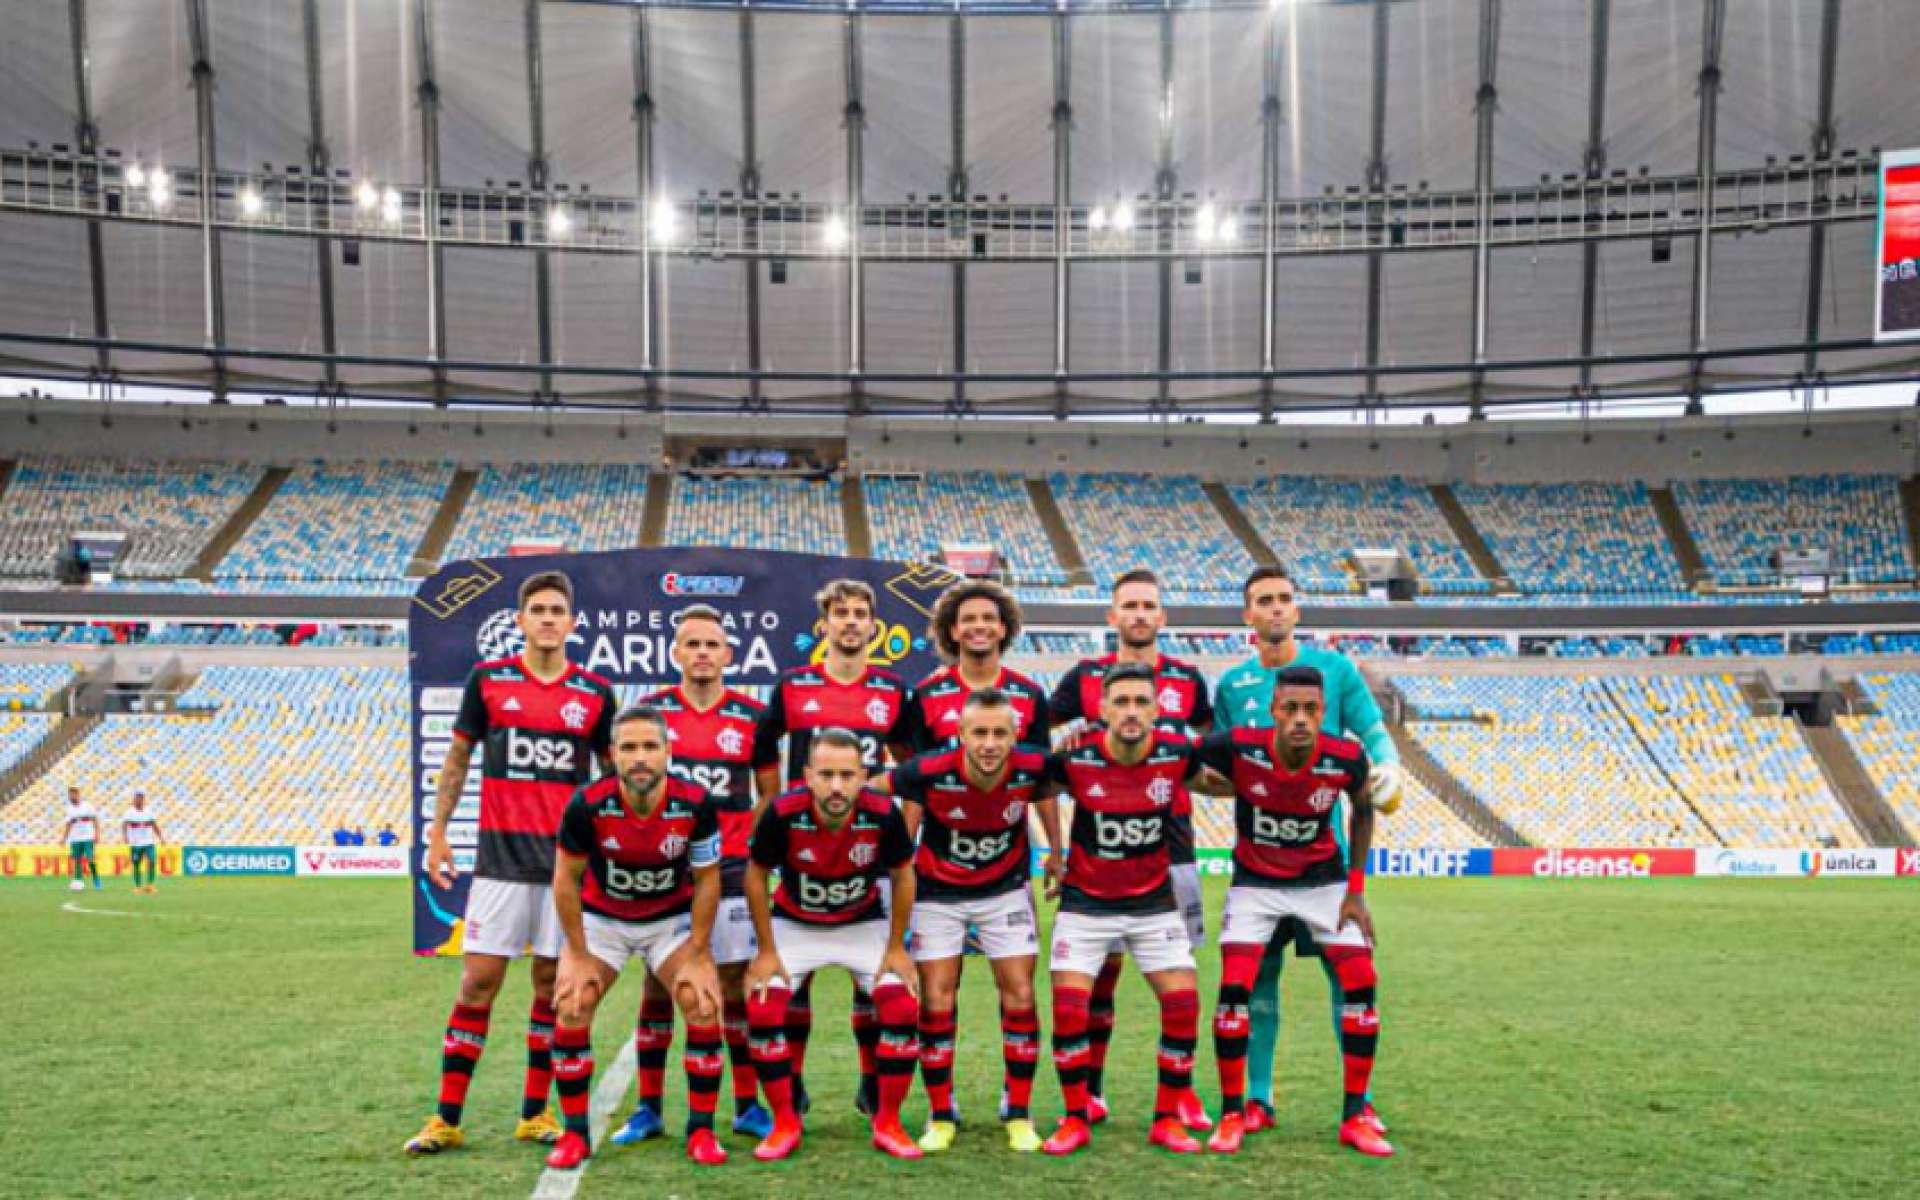 Bangu X Flamengo Pelo Carioca Transmissao Ao Vivo Do Jogo De Hoje Futebol Esportes O Povo